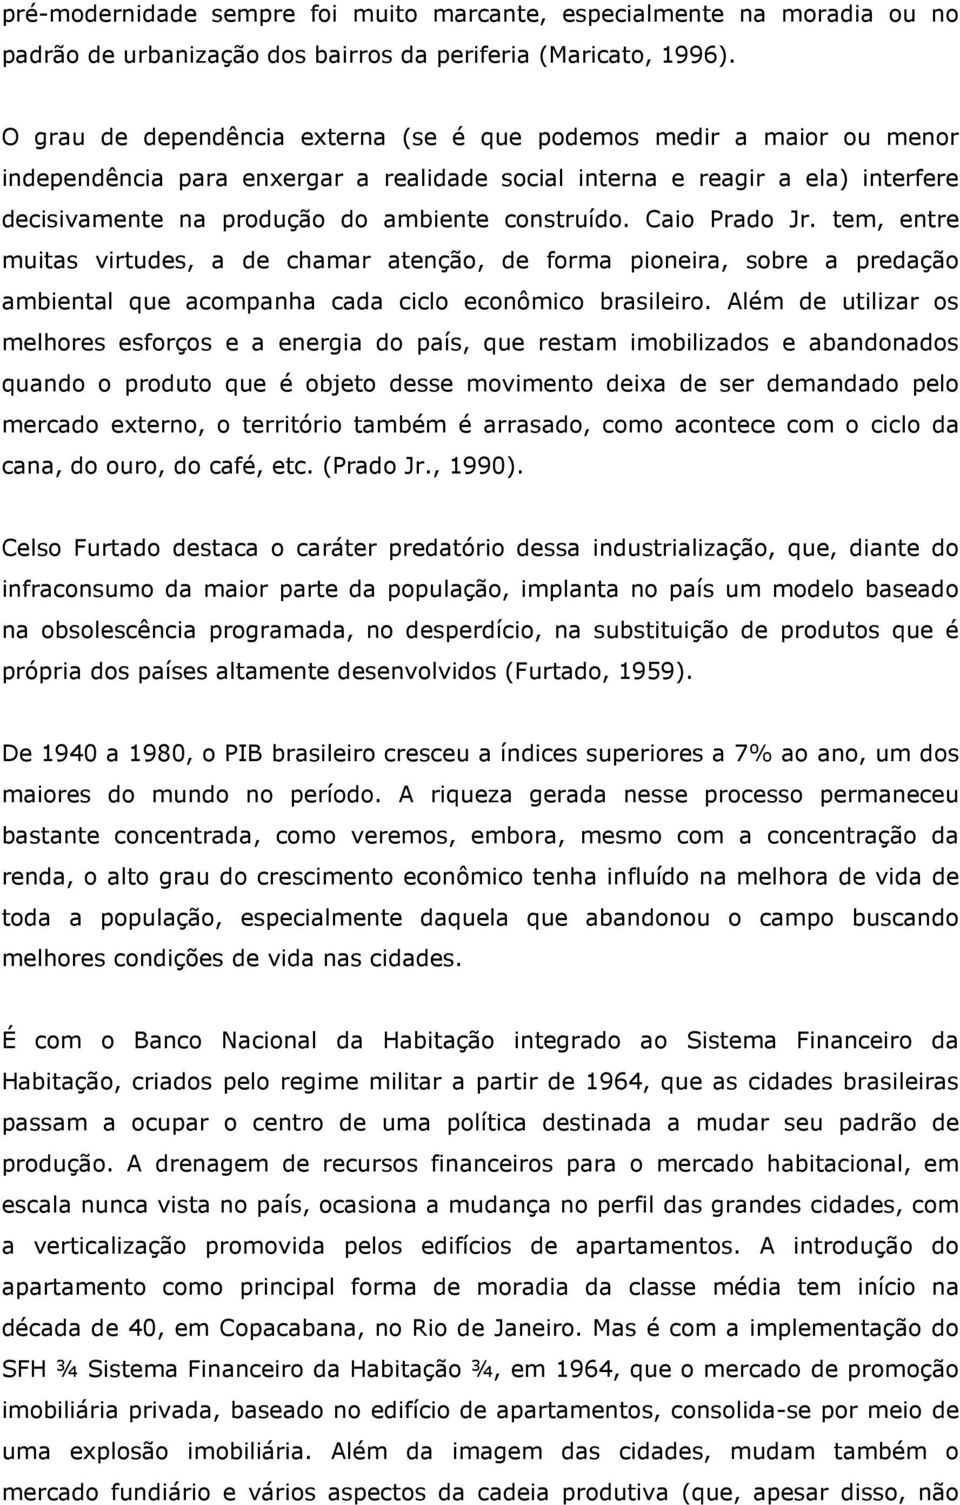 construído. Caio Prado Jr. tem, entre muitas virtudes, a de chamar atenção, de forma pioneira, sobre a predação ambiental que acompanha cada ciclo econômico brasileiro.